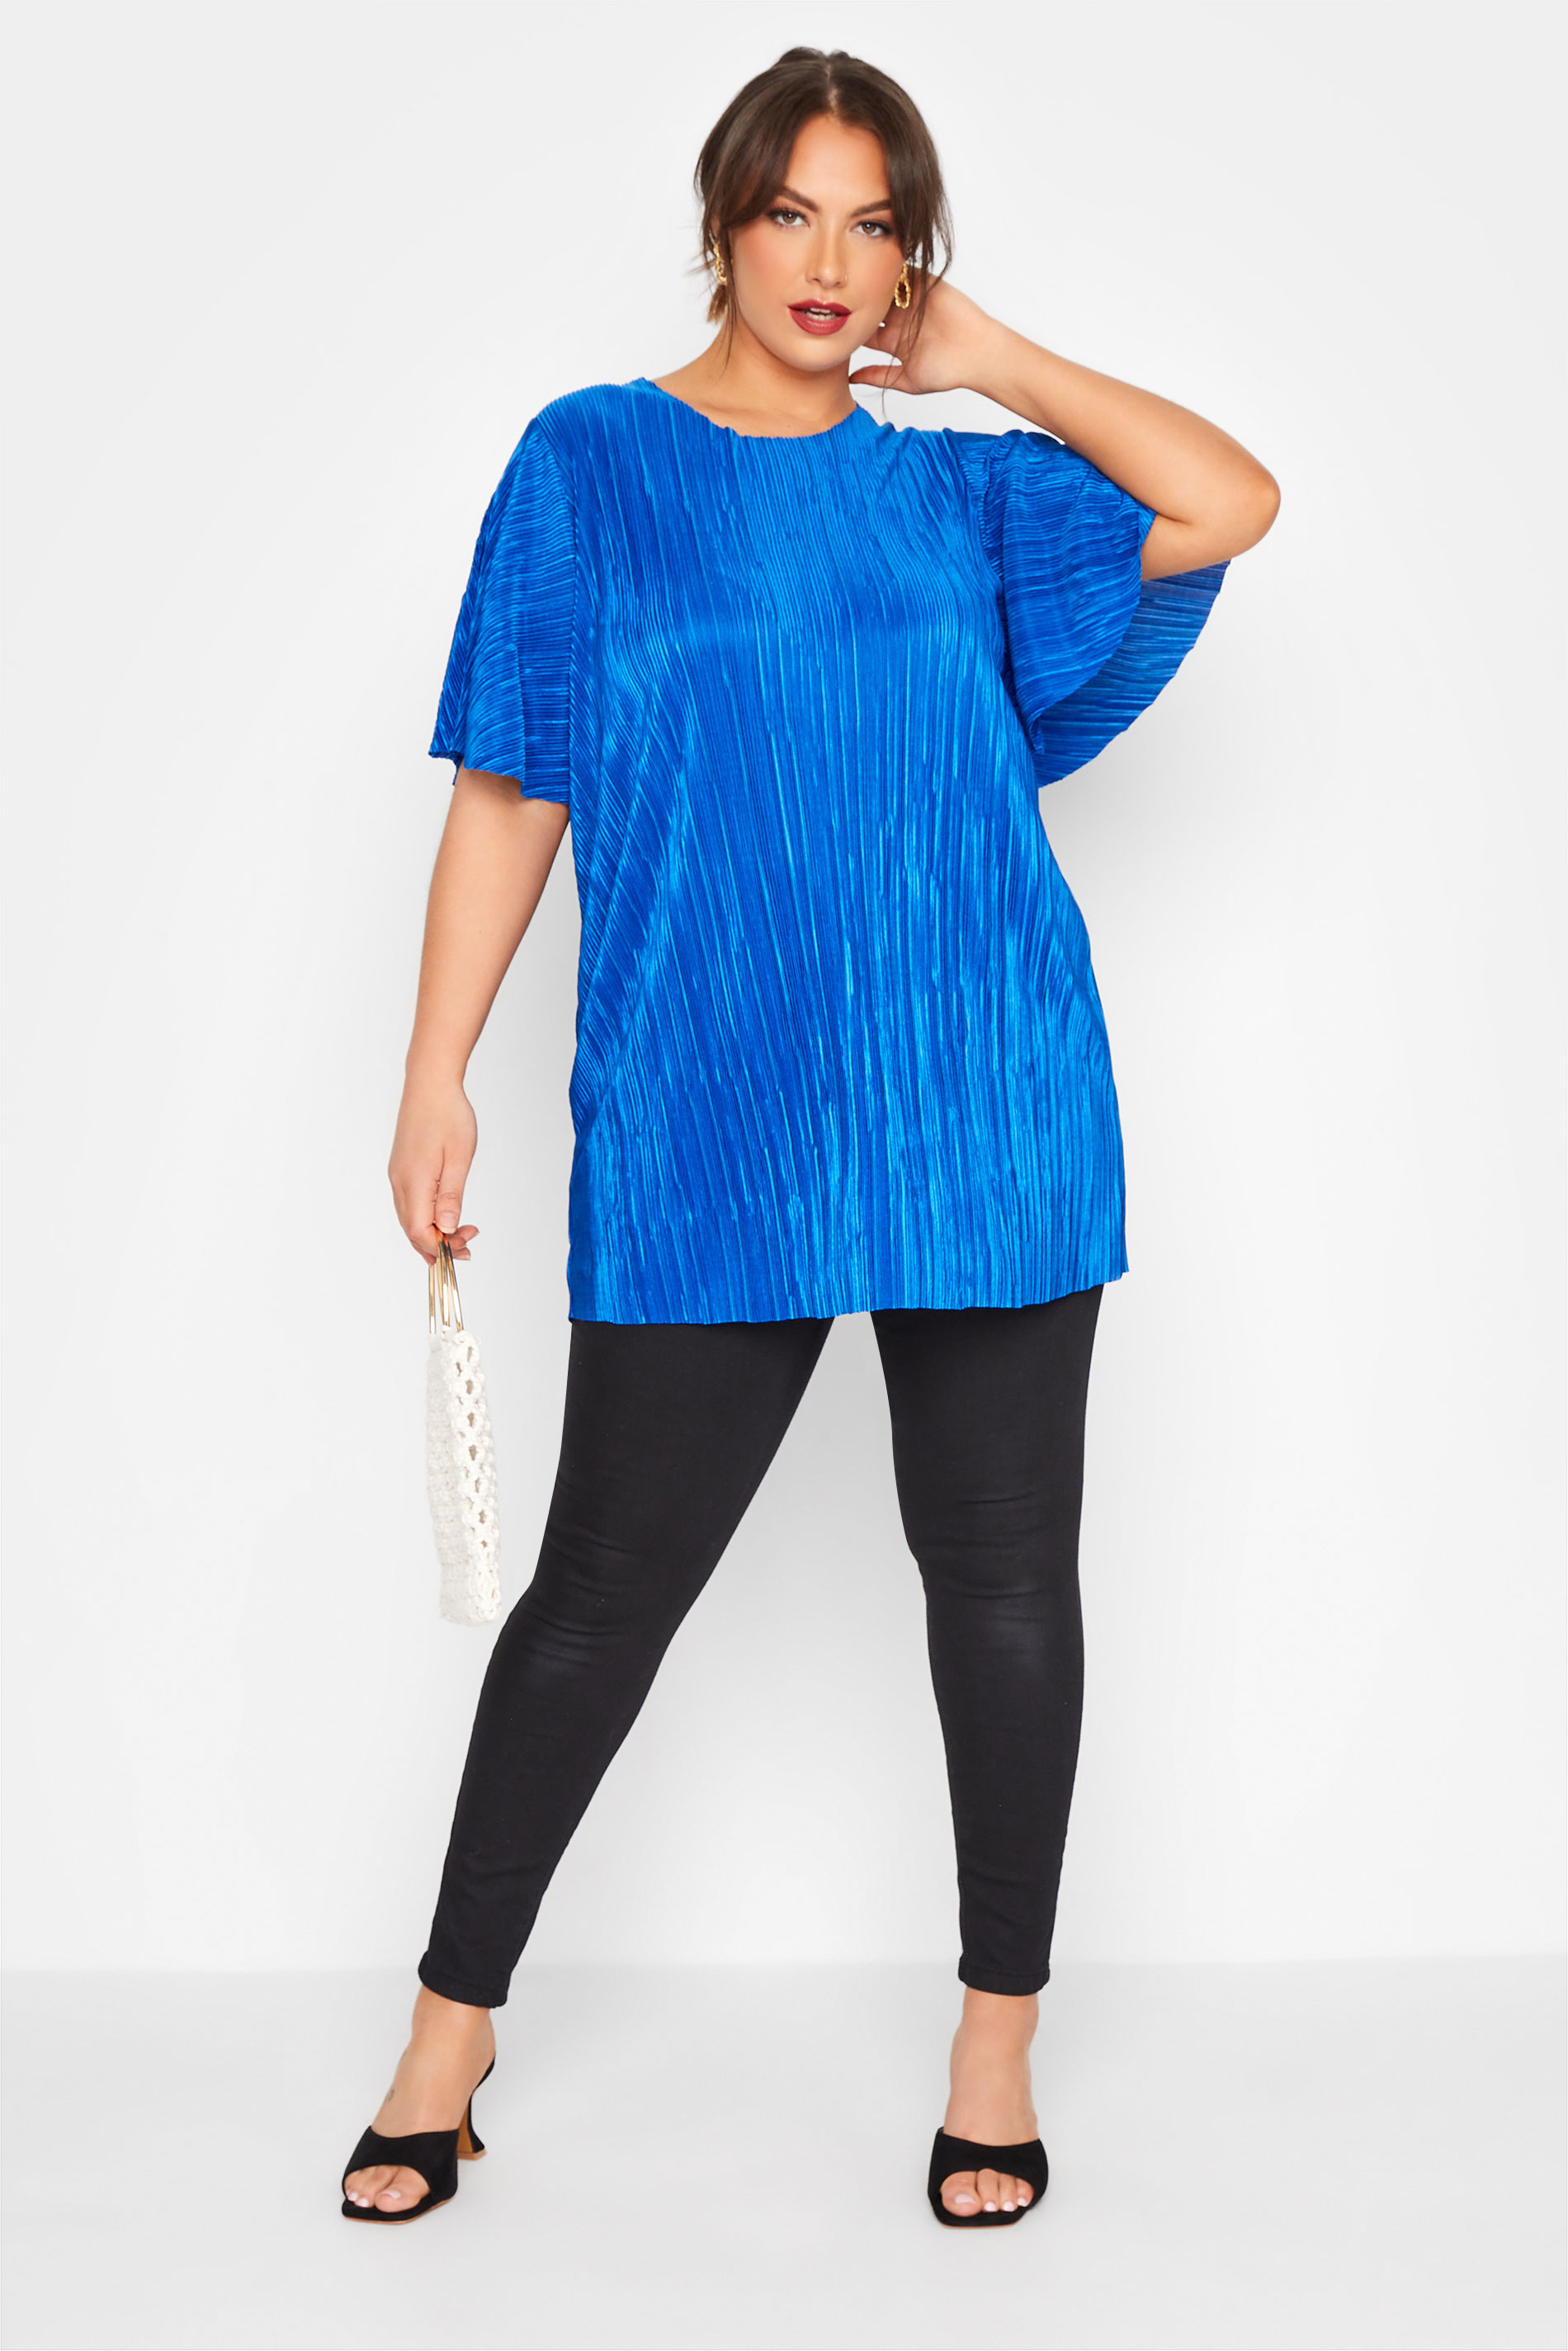 Grande taille  Tops Grande taille  Tops de Soirée | LIMITED COLLECTION - T-Shirt Bleu Roi Ample Texture Plissée - HW73564